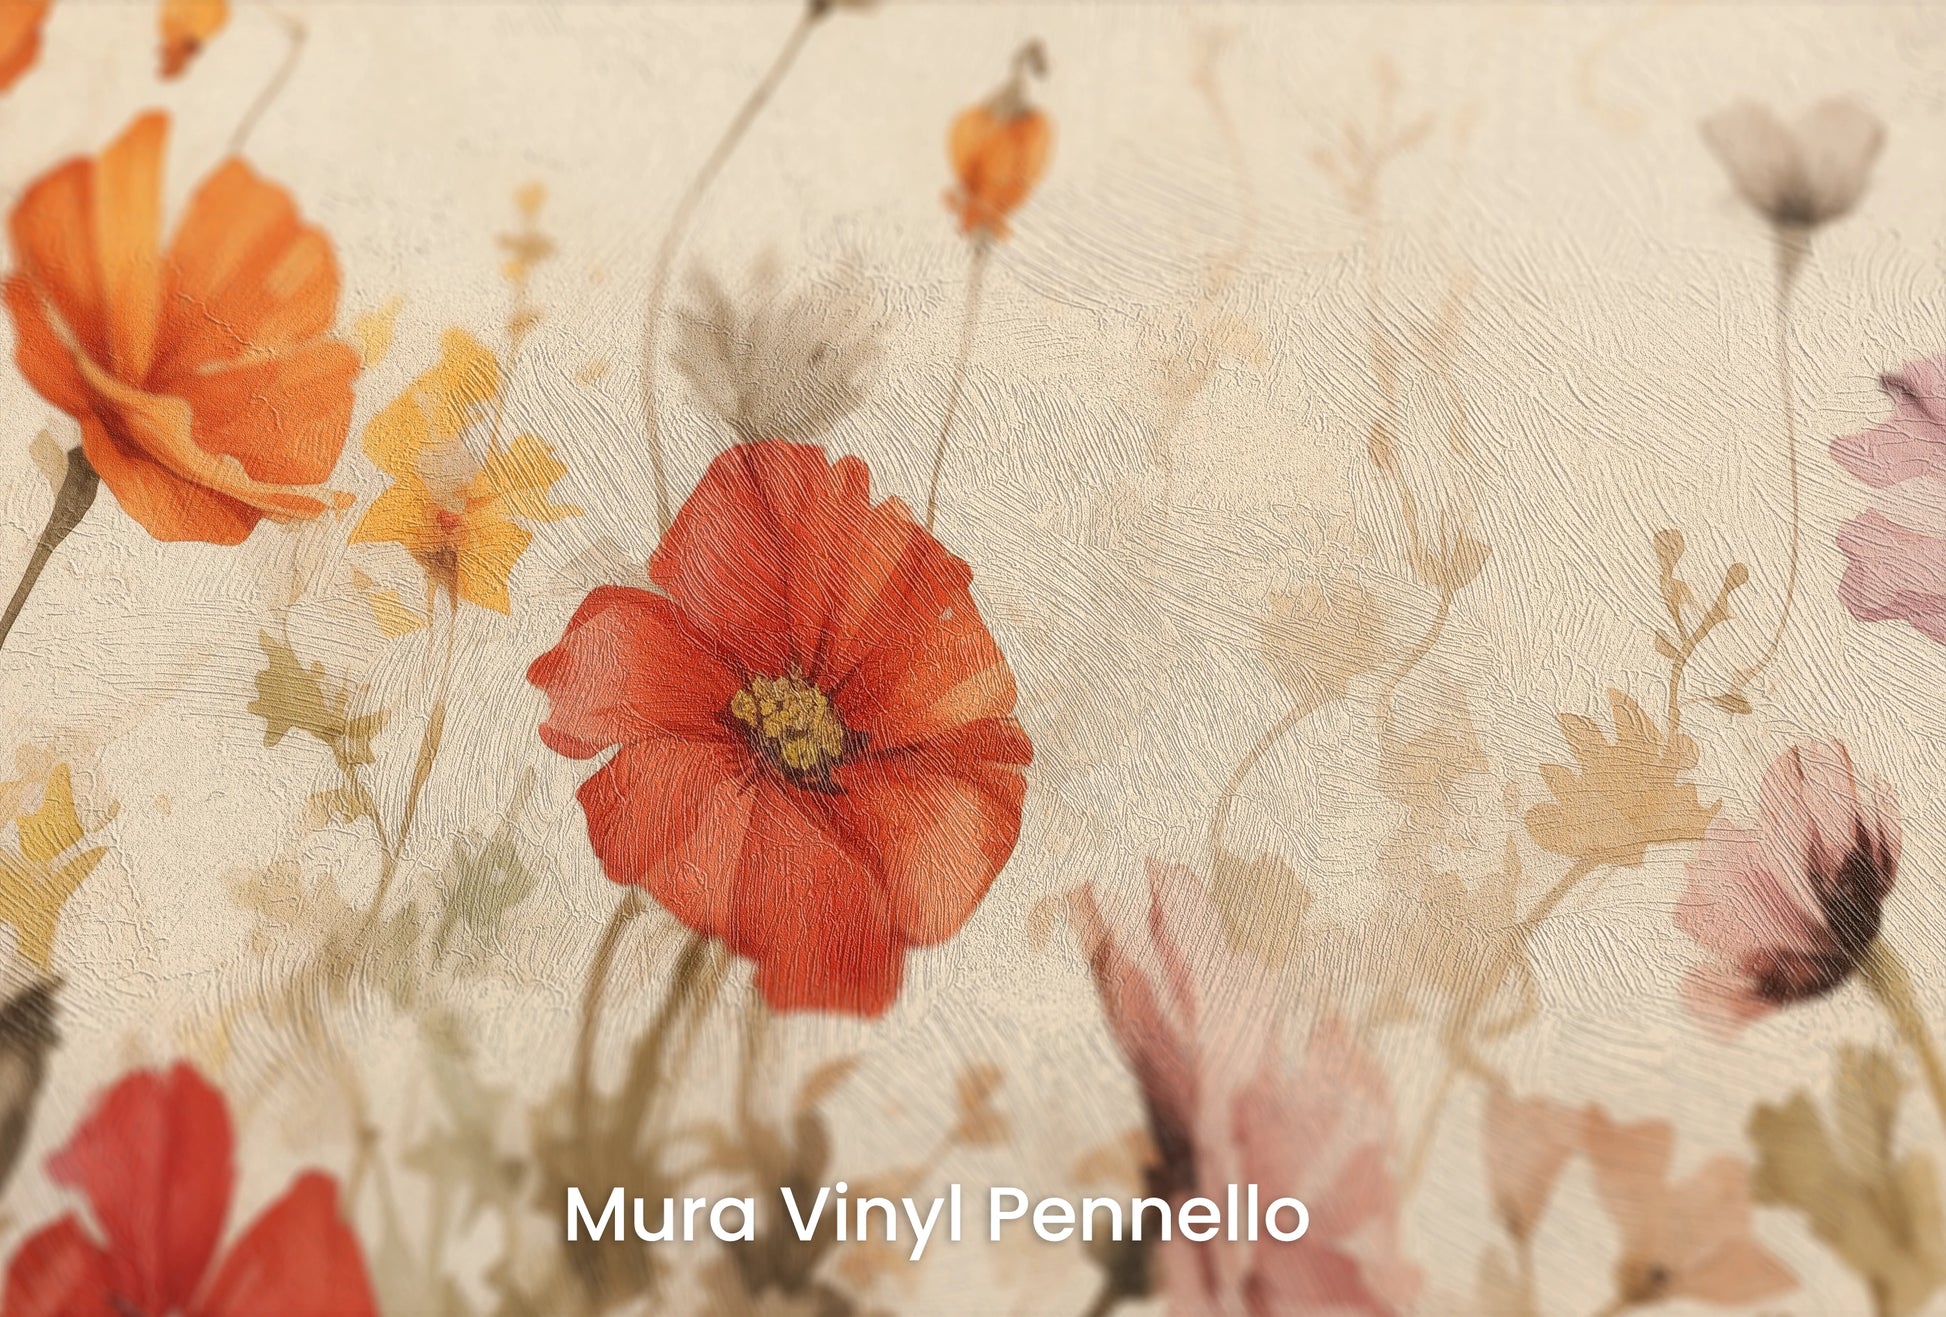 Zbliżenie na artystyczną fototapetę o nazwie Field of Poppies na podłożu Mura Vinyl Pennello - faktura pociągnięć pędzla malarskiego.